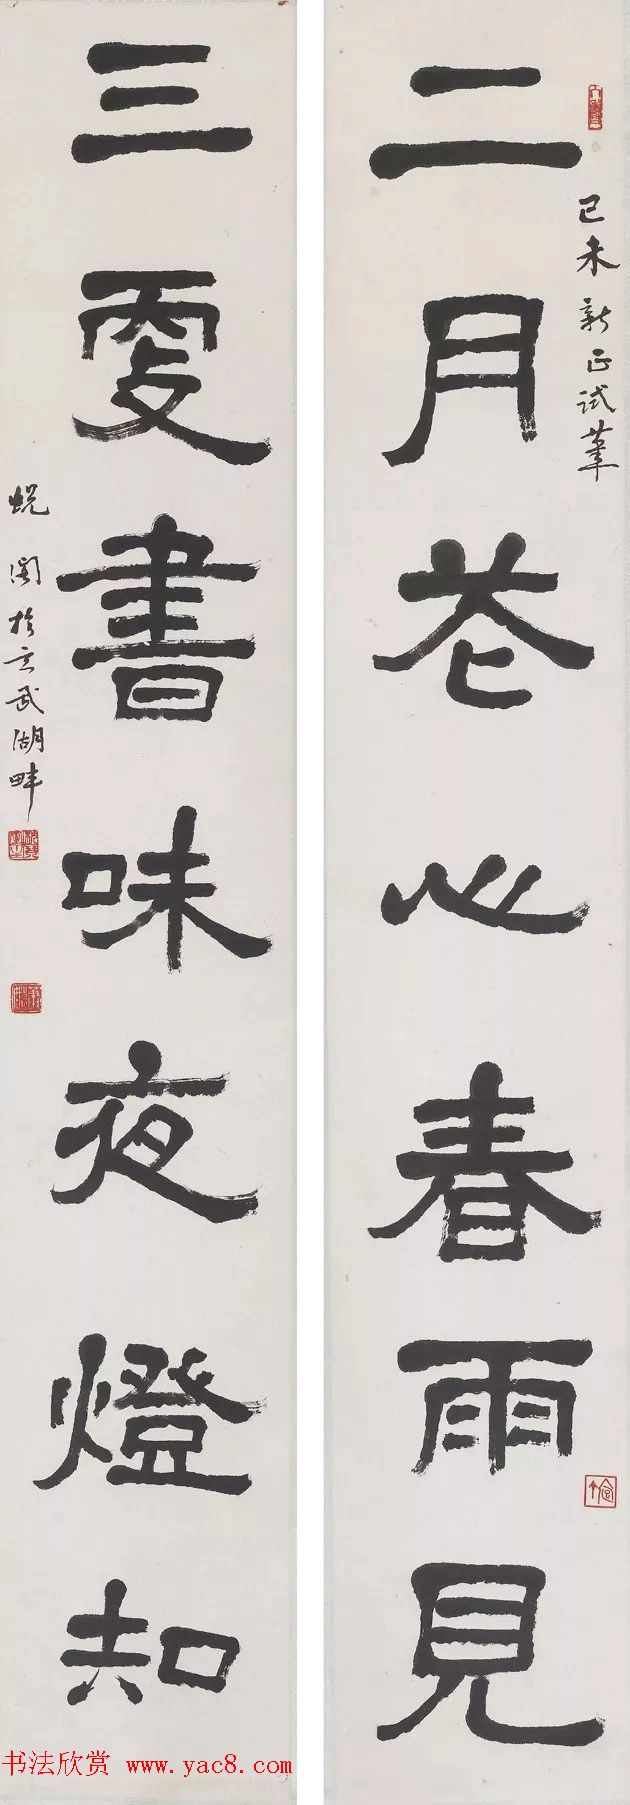 美在新时代--中国美术馆藏书法精品展作品选刊